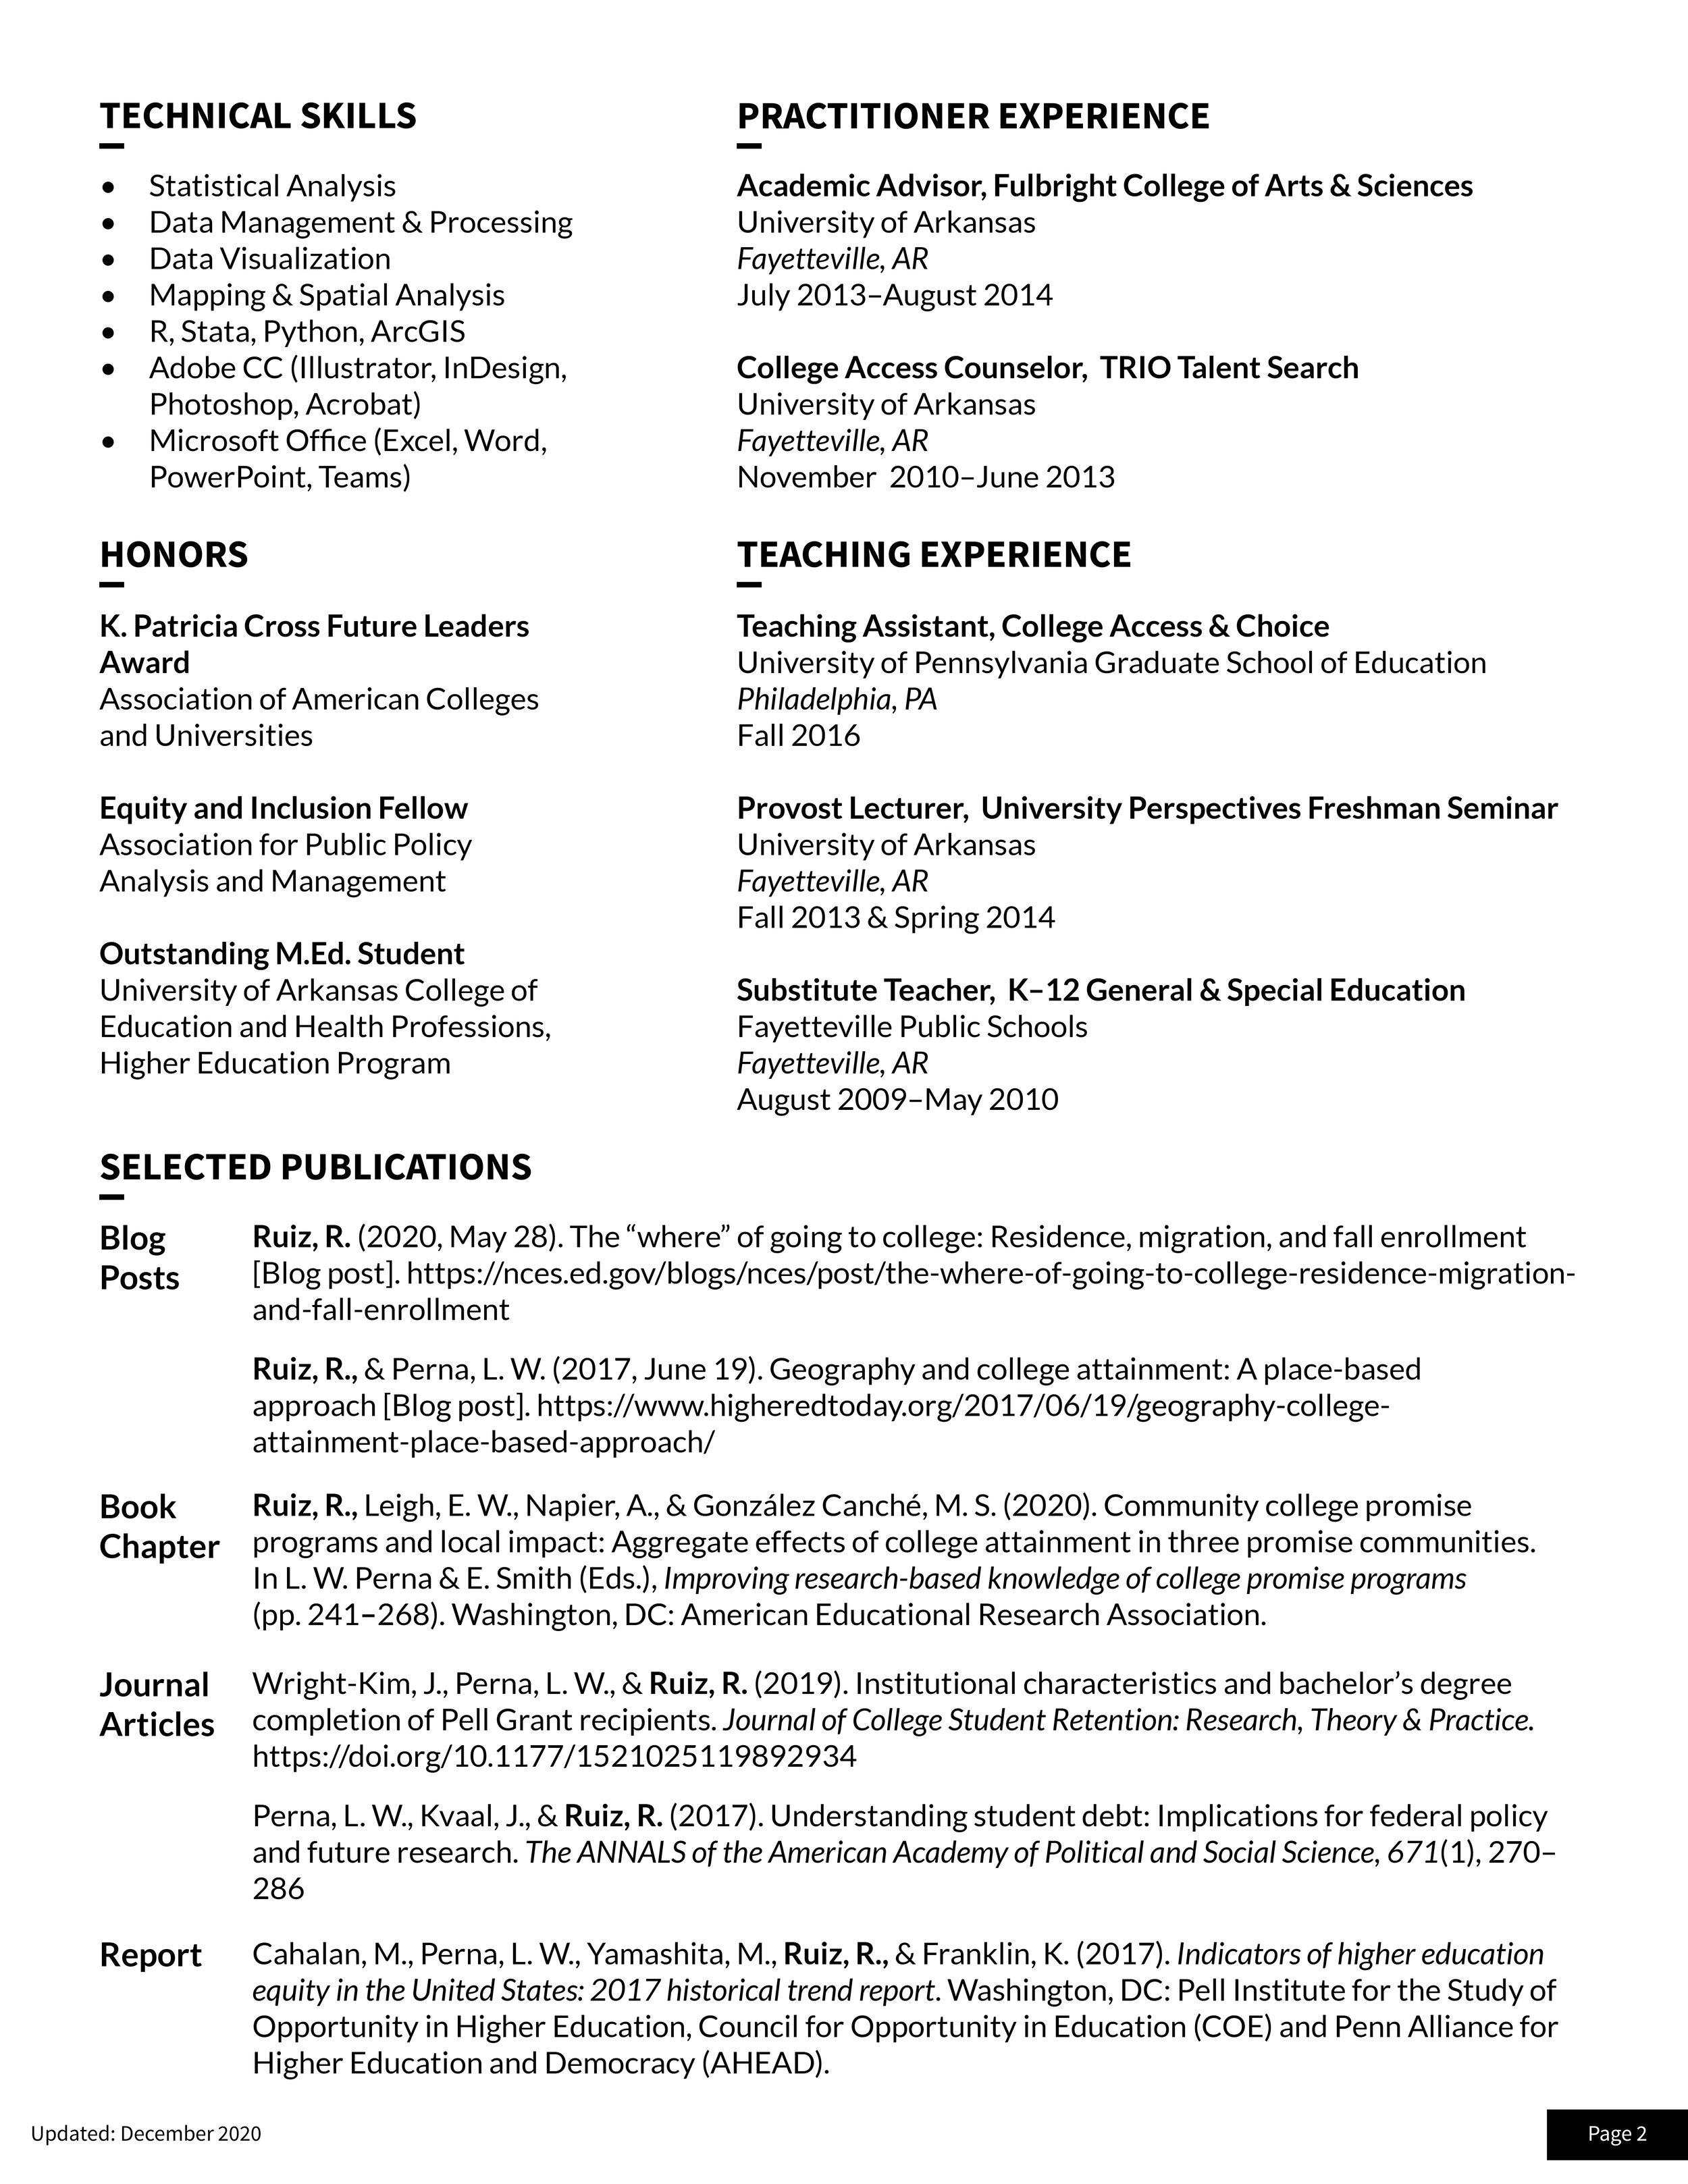 Resume - InDesign - December 20202.jpg